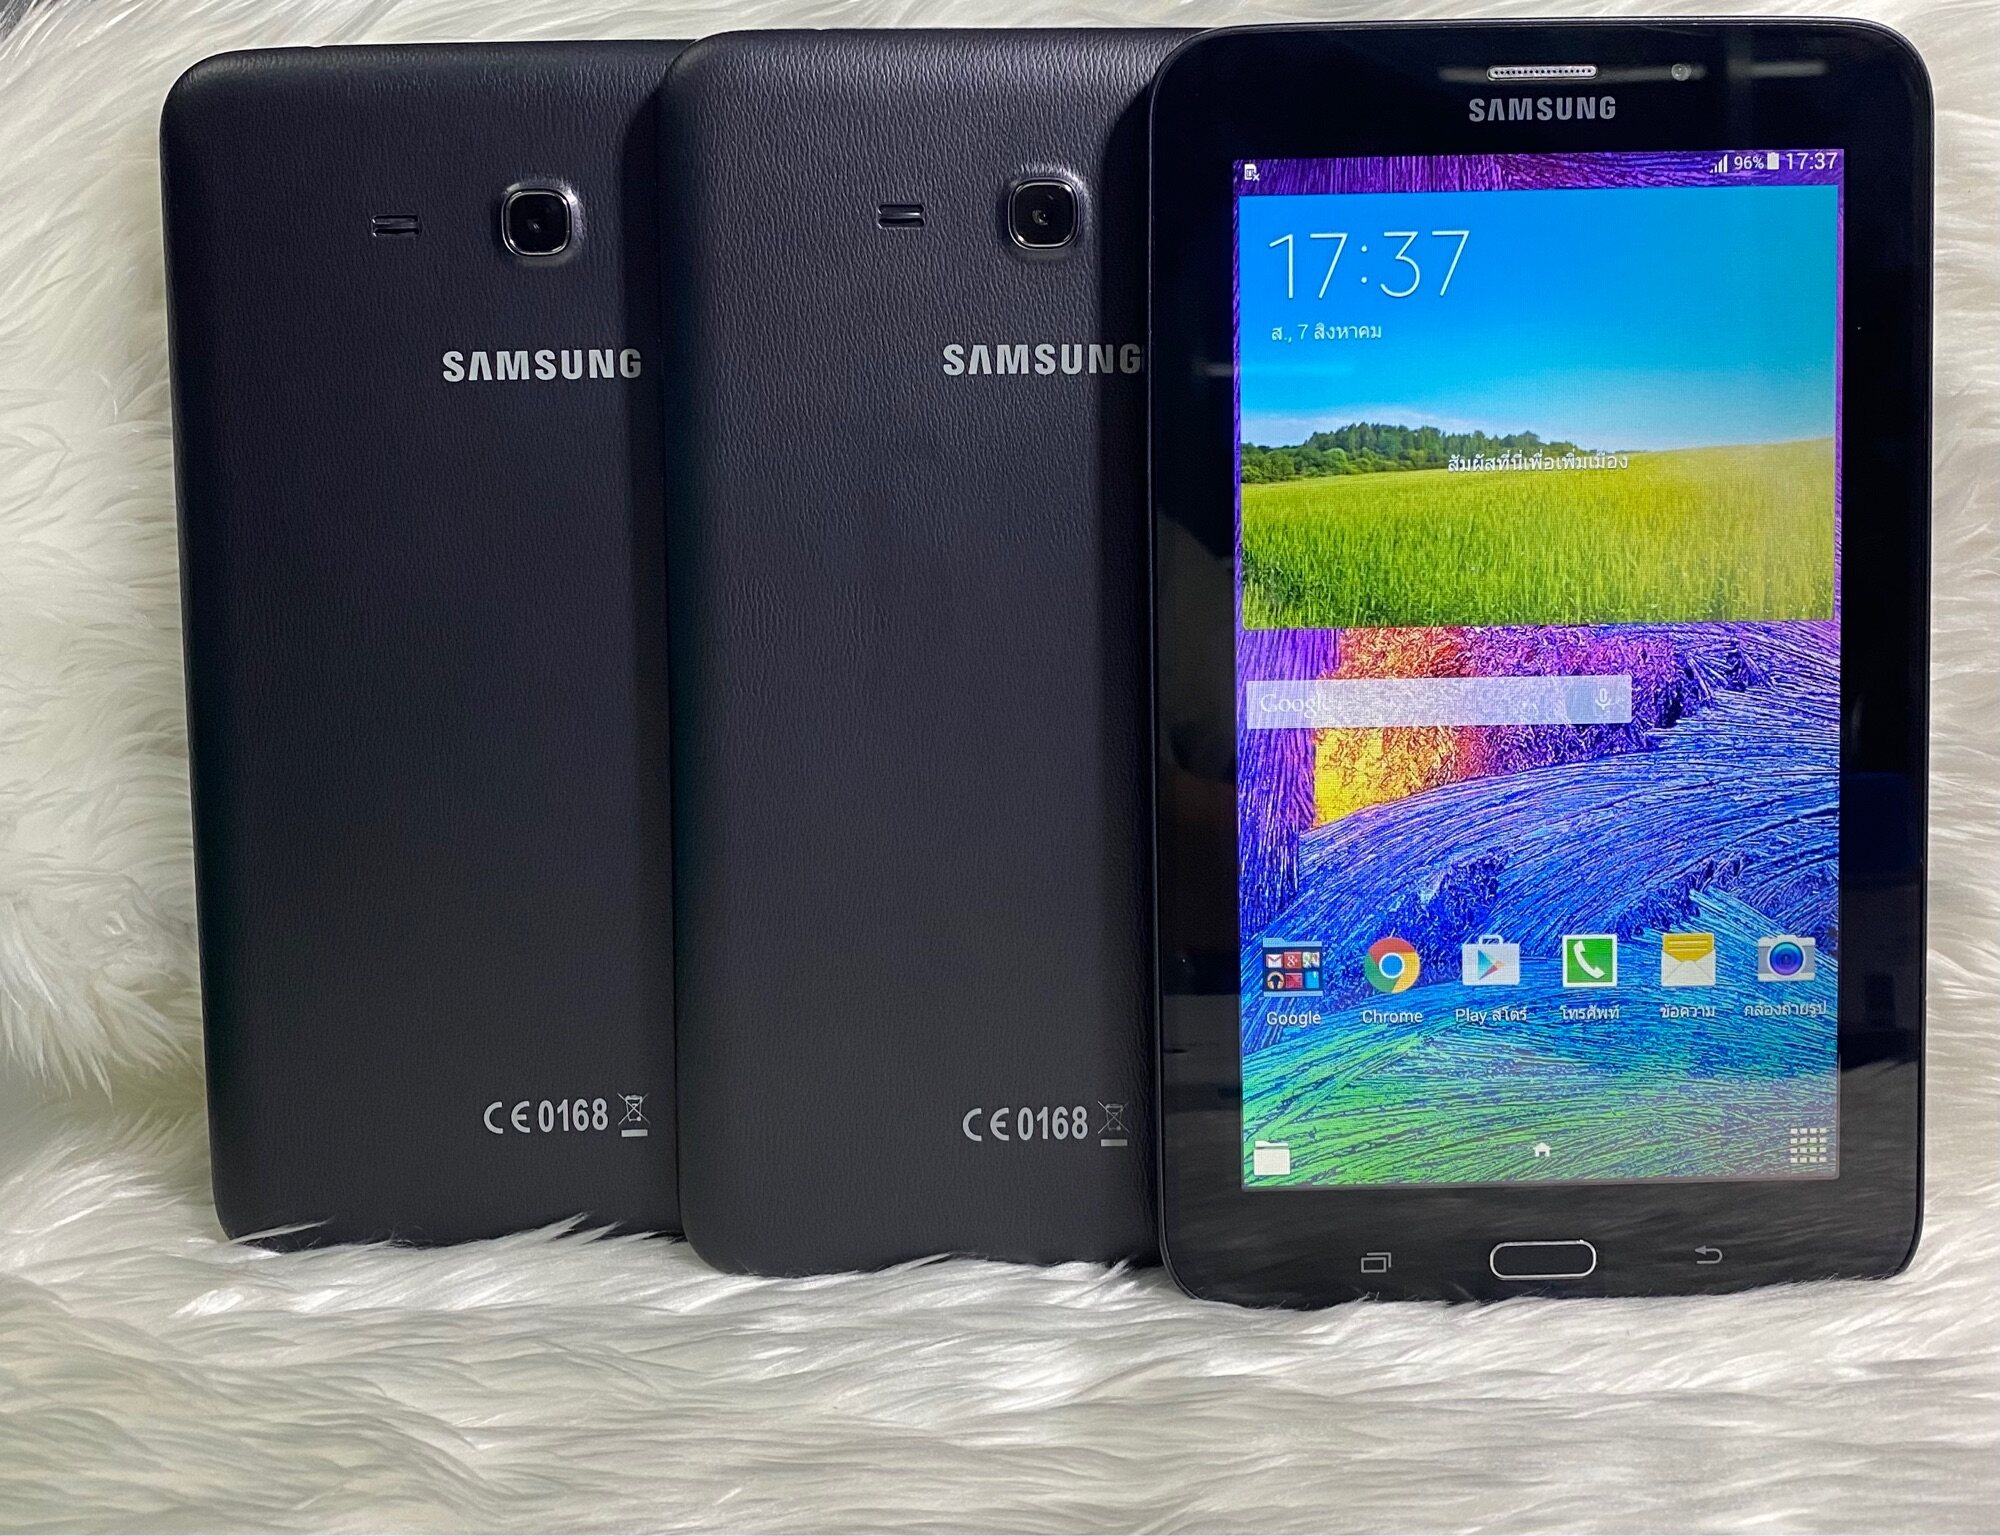 ภาพอธิบายเพิ่มเติมของ Samsung Galaxy Tab 3E แท็บเล็ตมือ-2พร้อมใช้งานเครื่อง​ไม่มีที่ปิดซิม(ฟรีชุดชาร์จ)